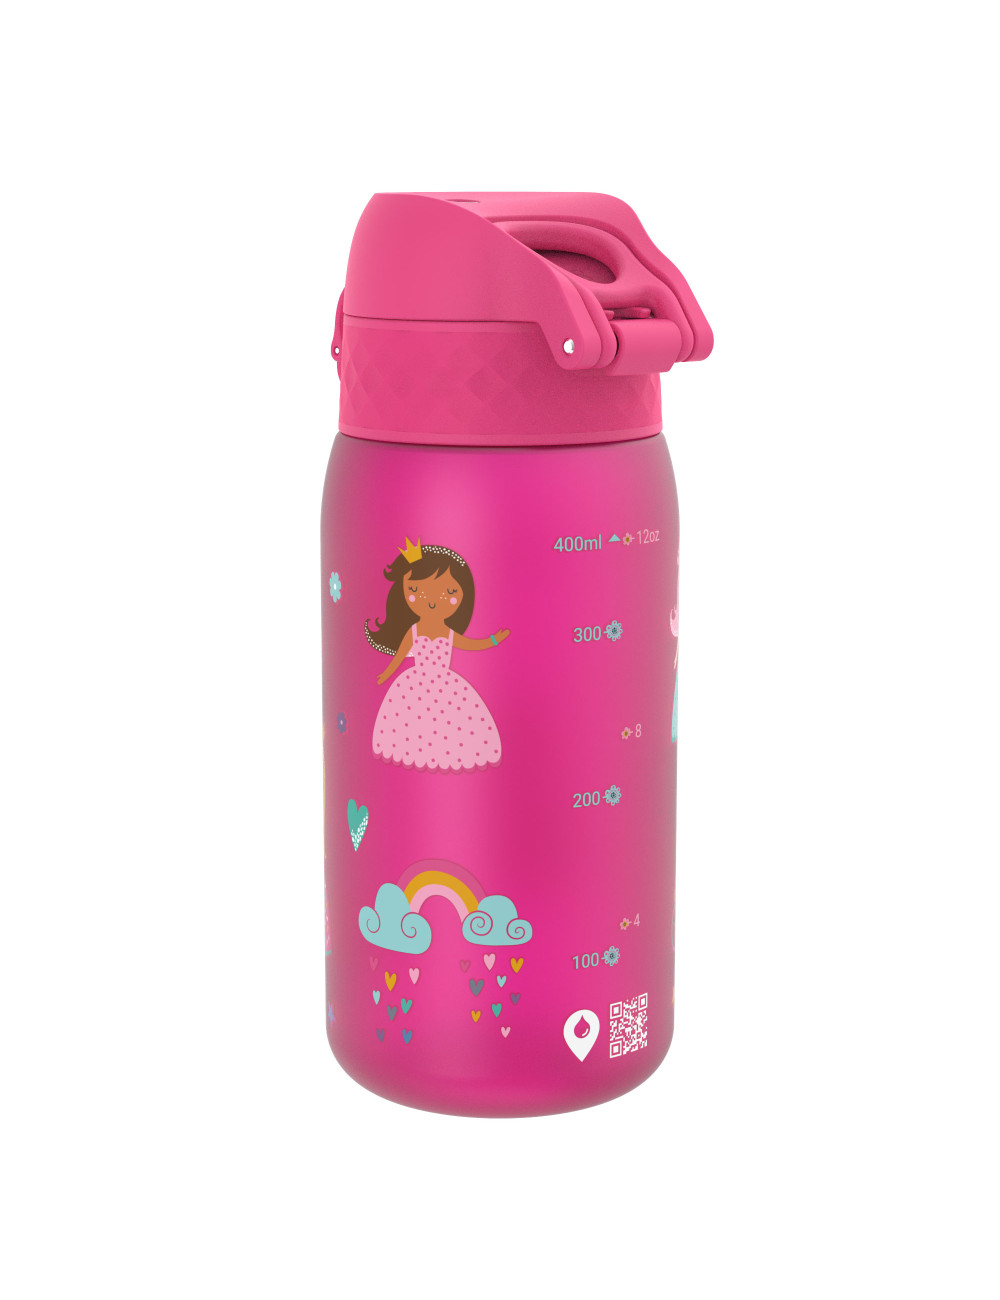 Butelka ION8 BPA Free Princess 350 ml